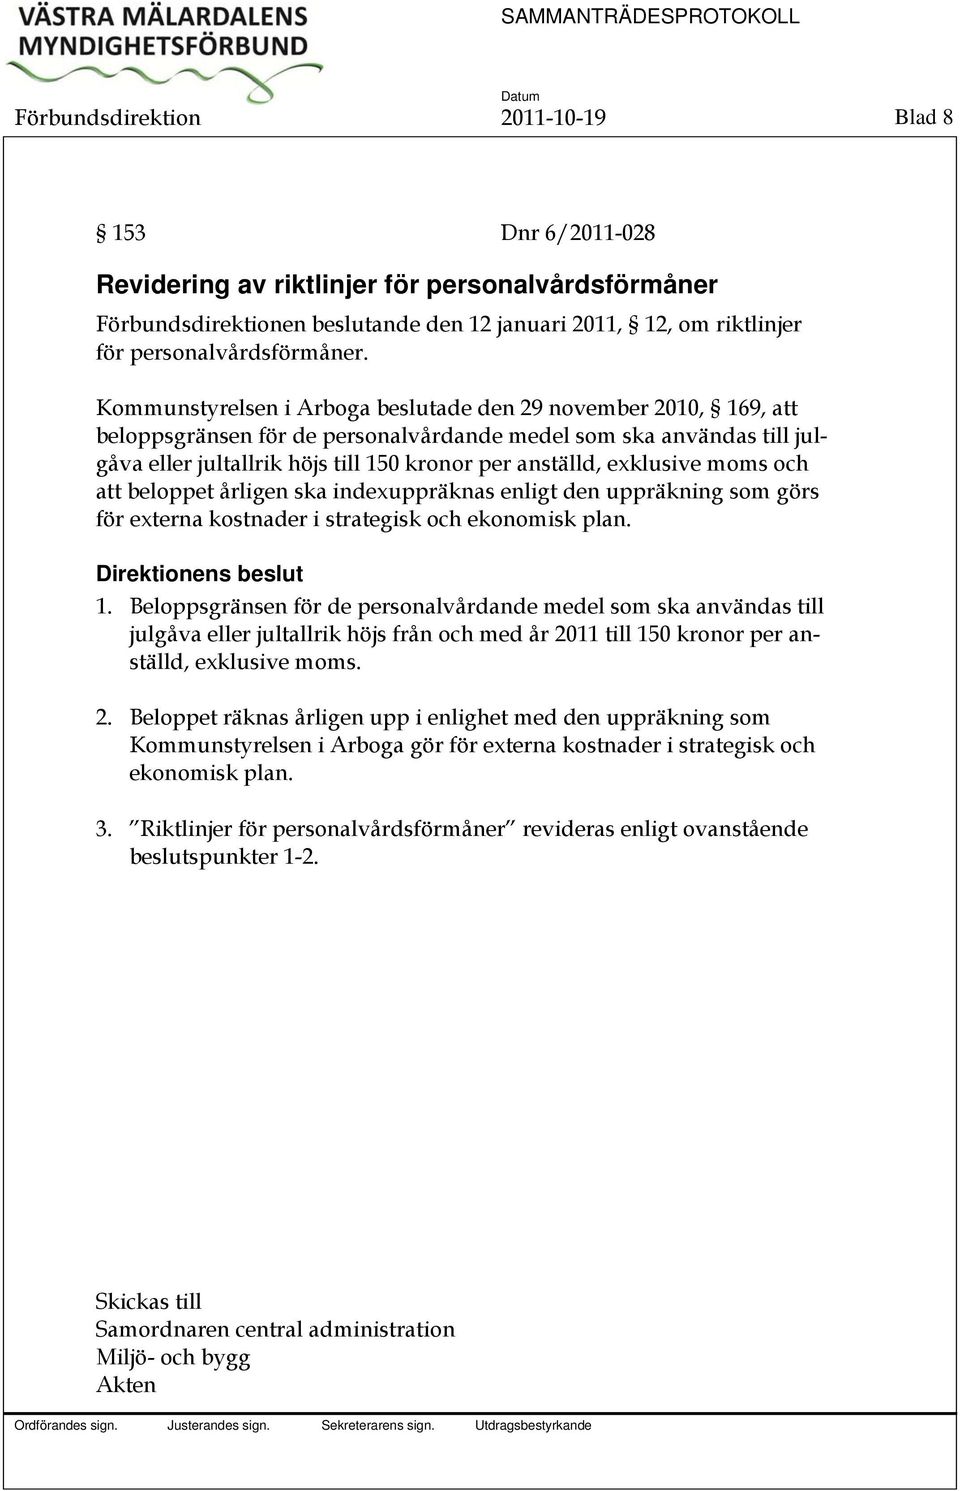 Kommunstyrelsen i Arboga beslutade den 29 november 2010, 169, att beloppsgränsen för de personalvårdande medel som ska användas till julgåva eller jultallrik höjs till 150 kronor per anställd,